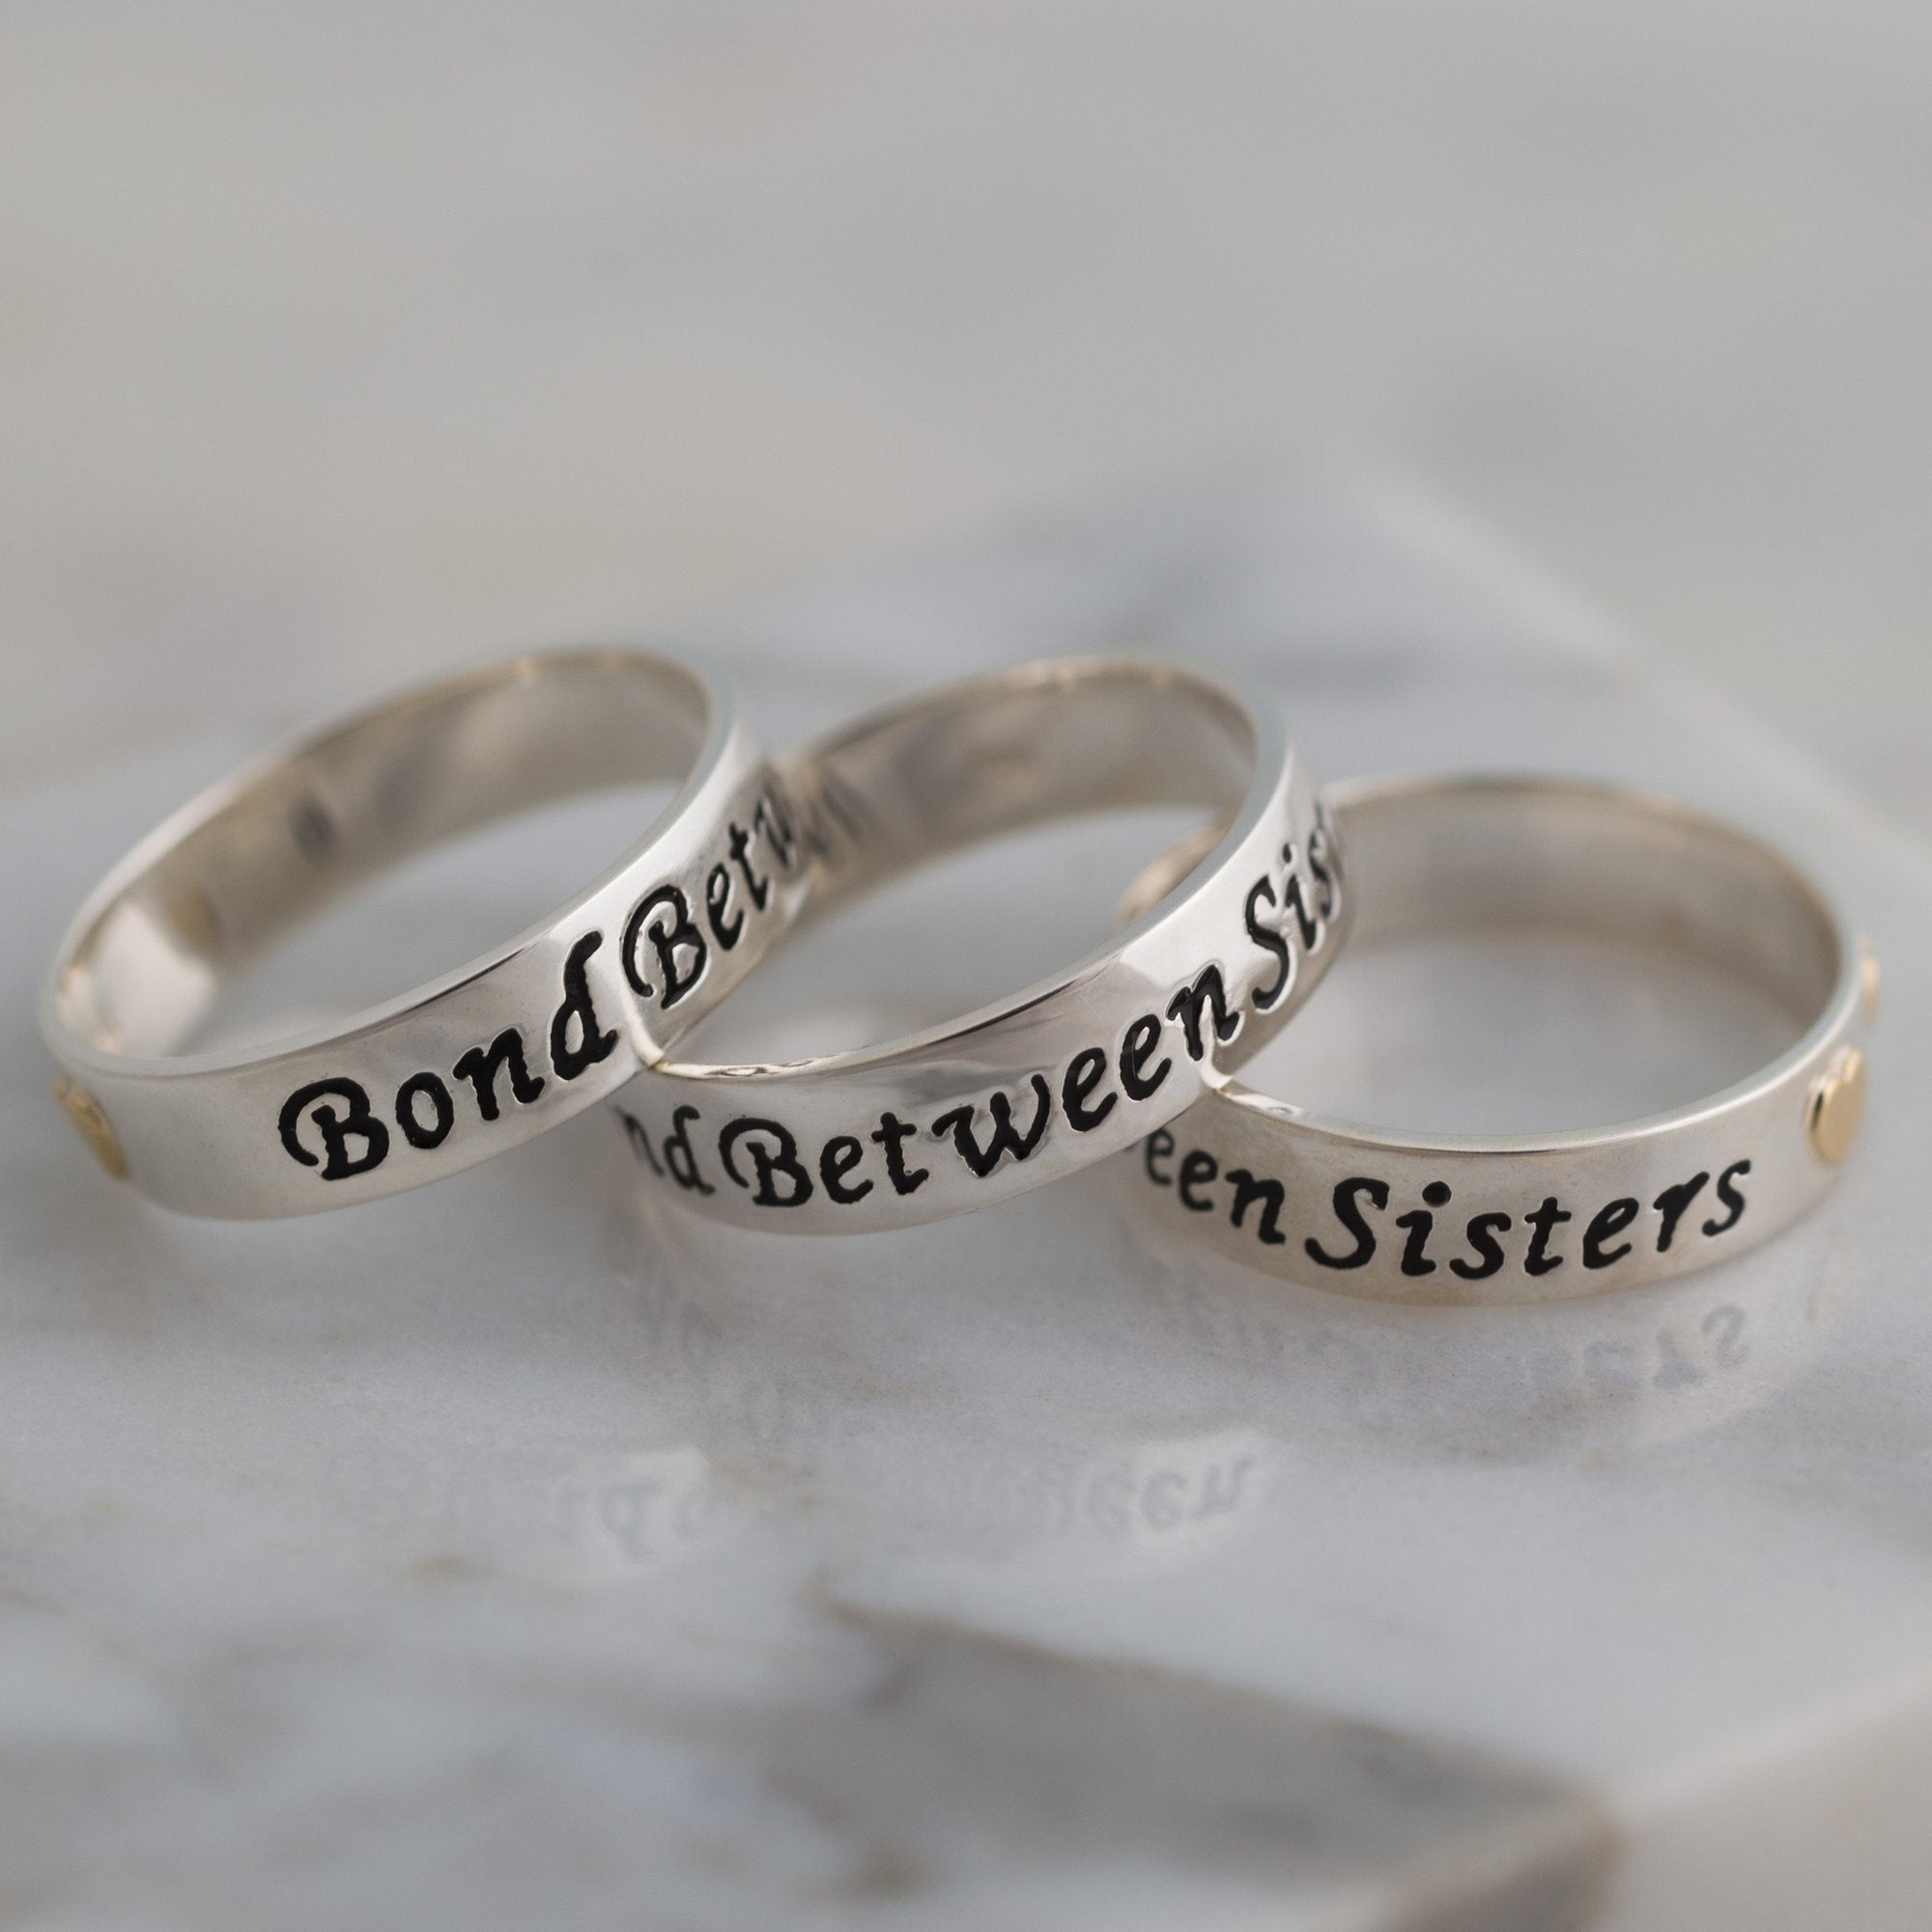 Bond Between Sisters Sterling Ring - 2 Sisters - 10